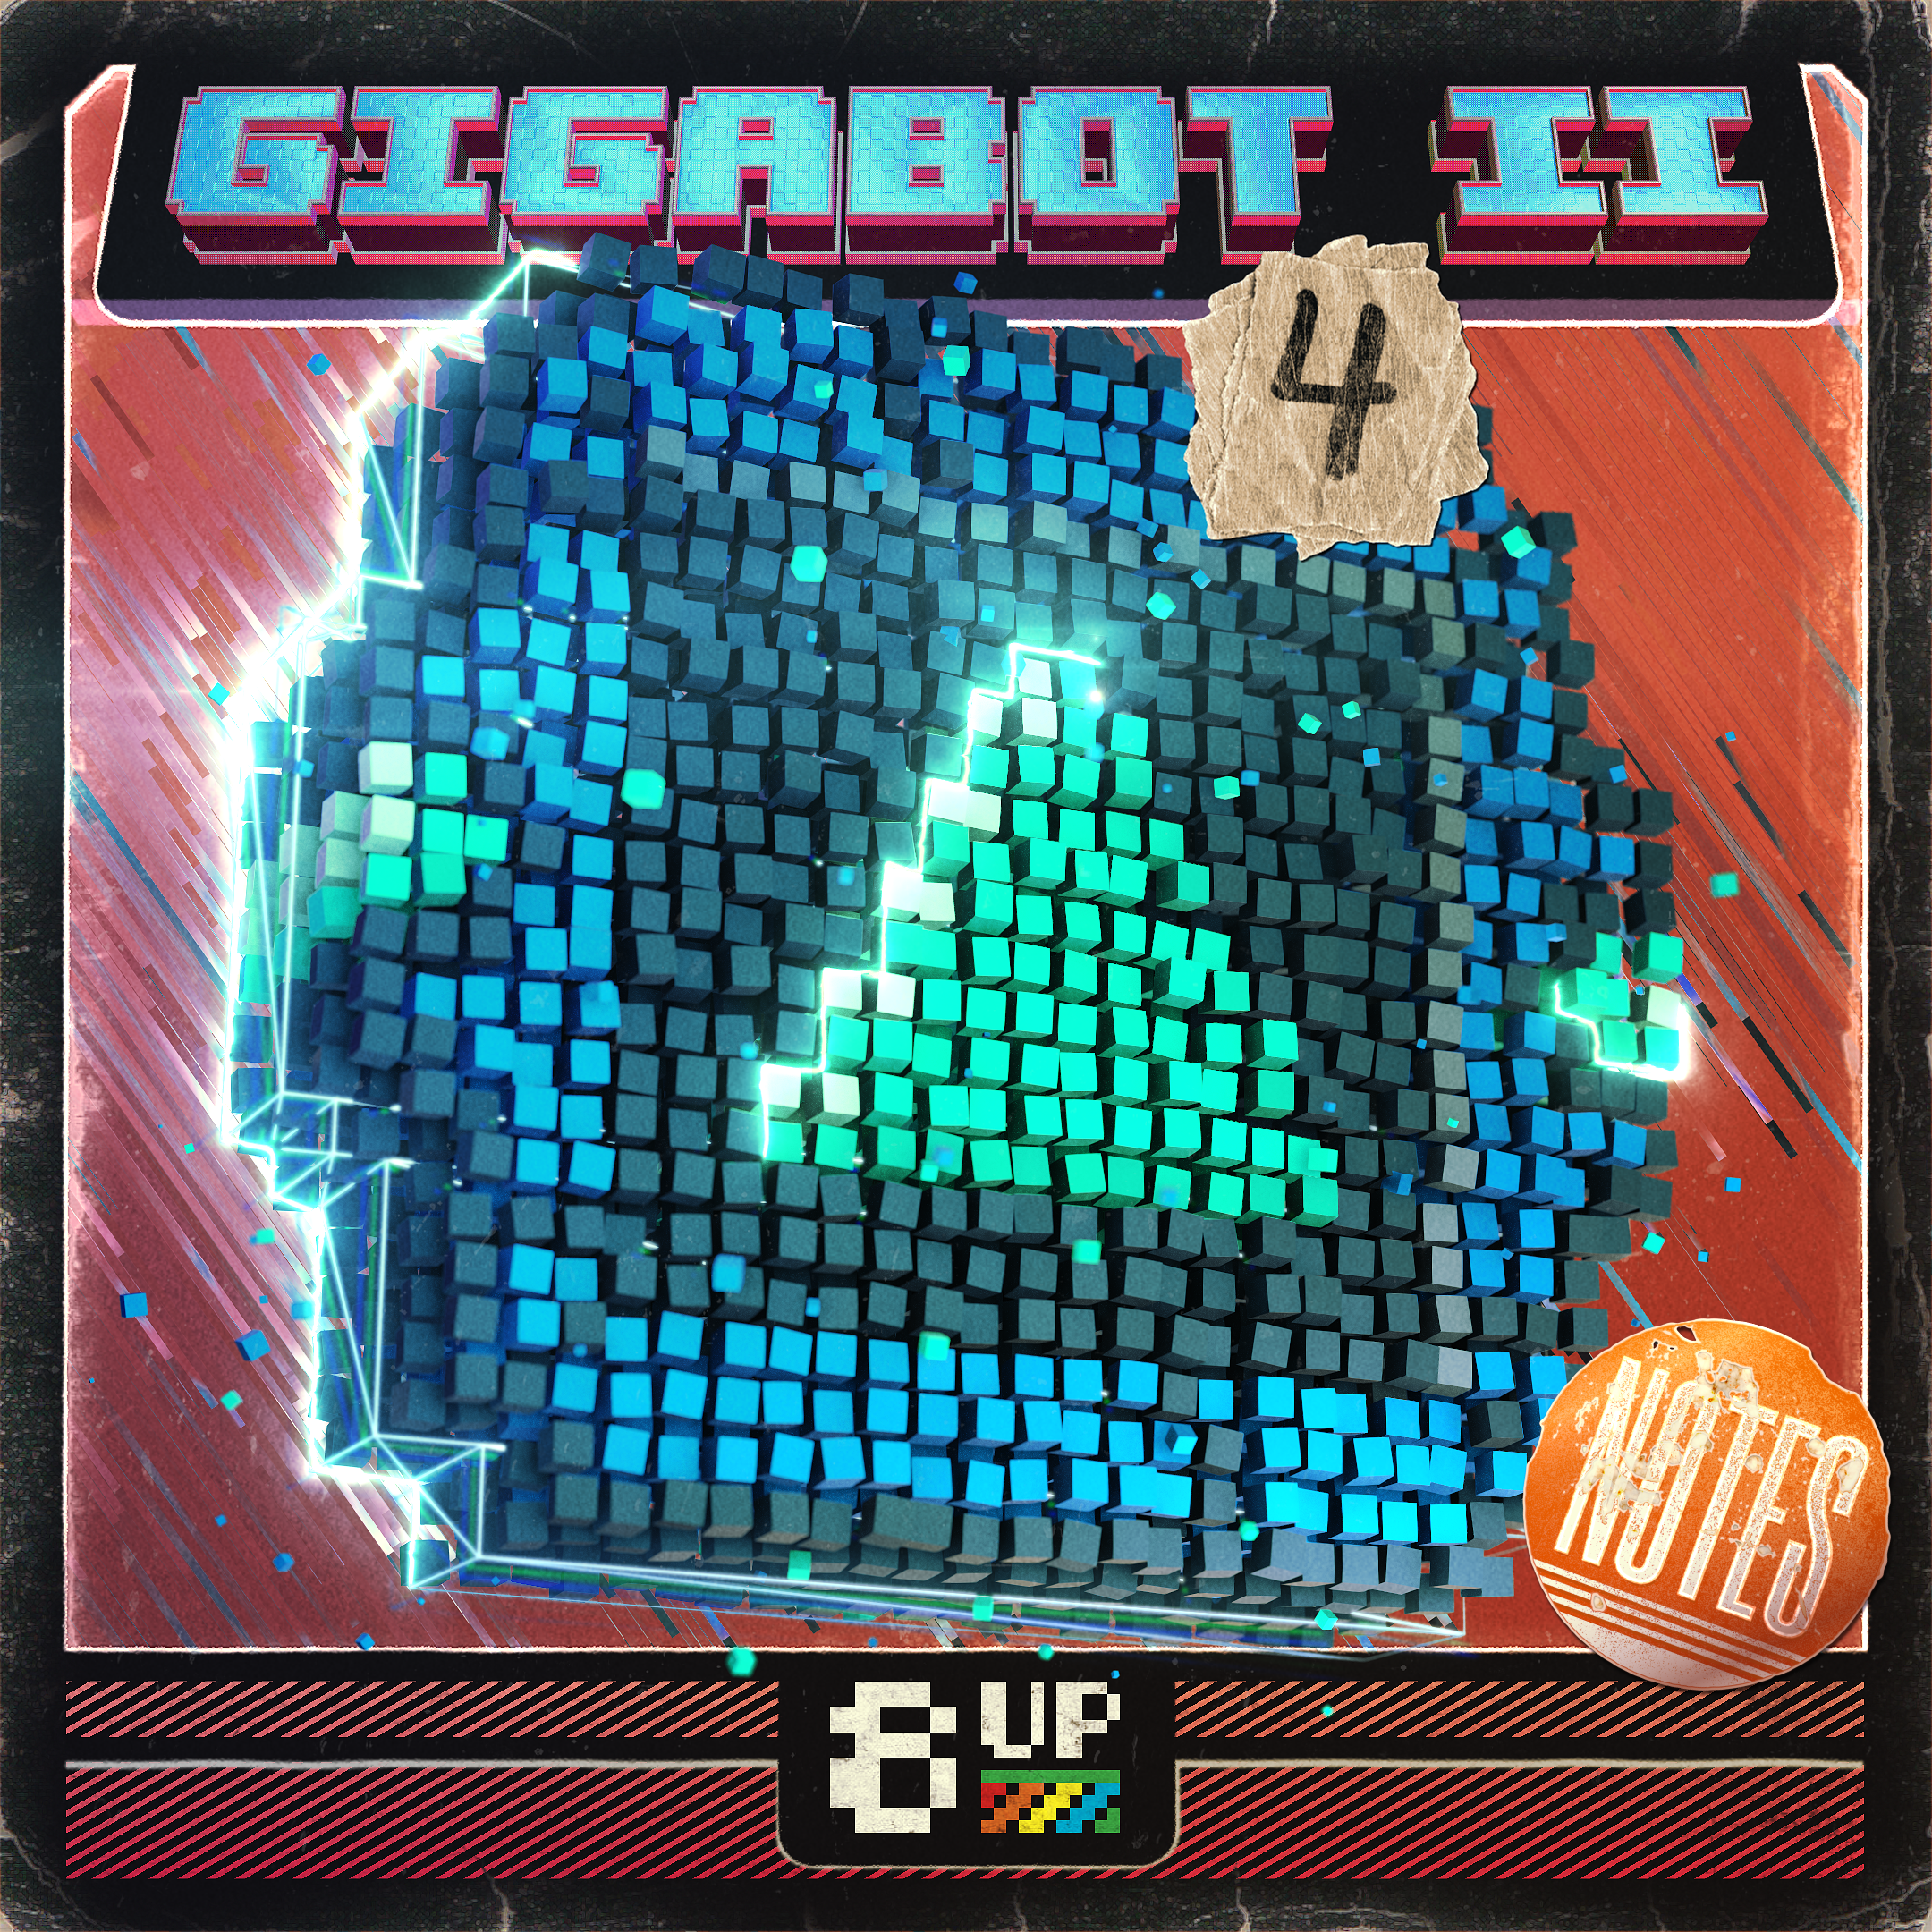 Gigabot 2 Notes 4 Packshot by 8UP